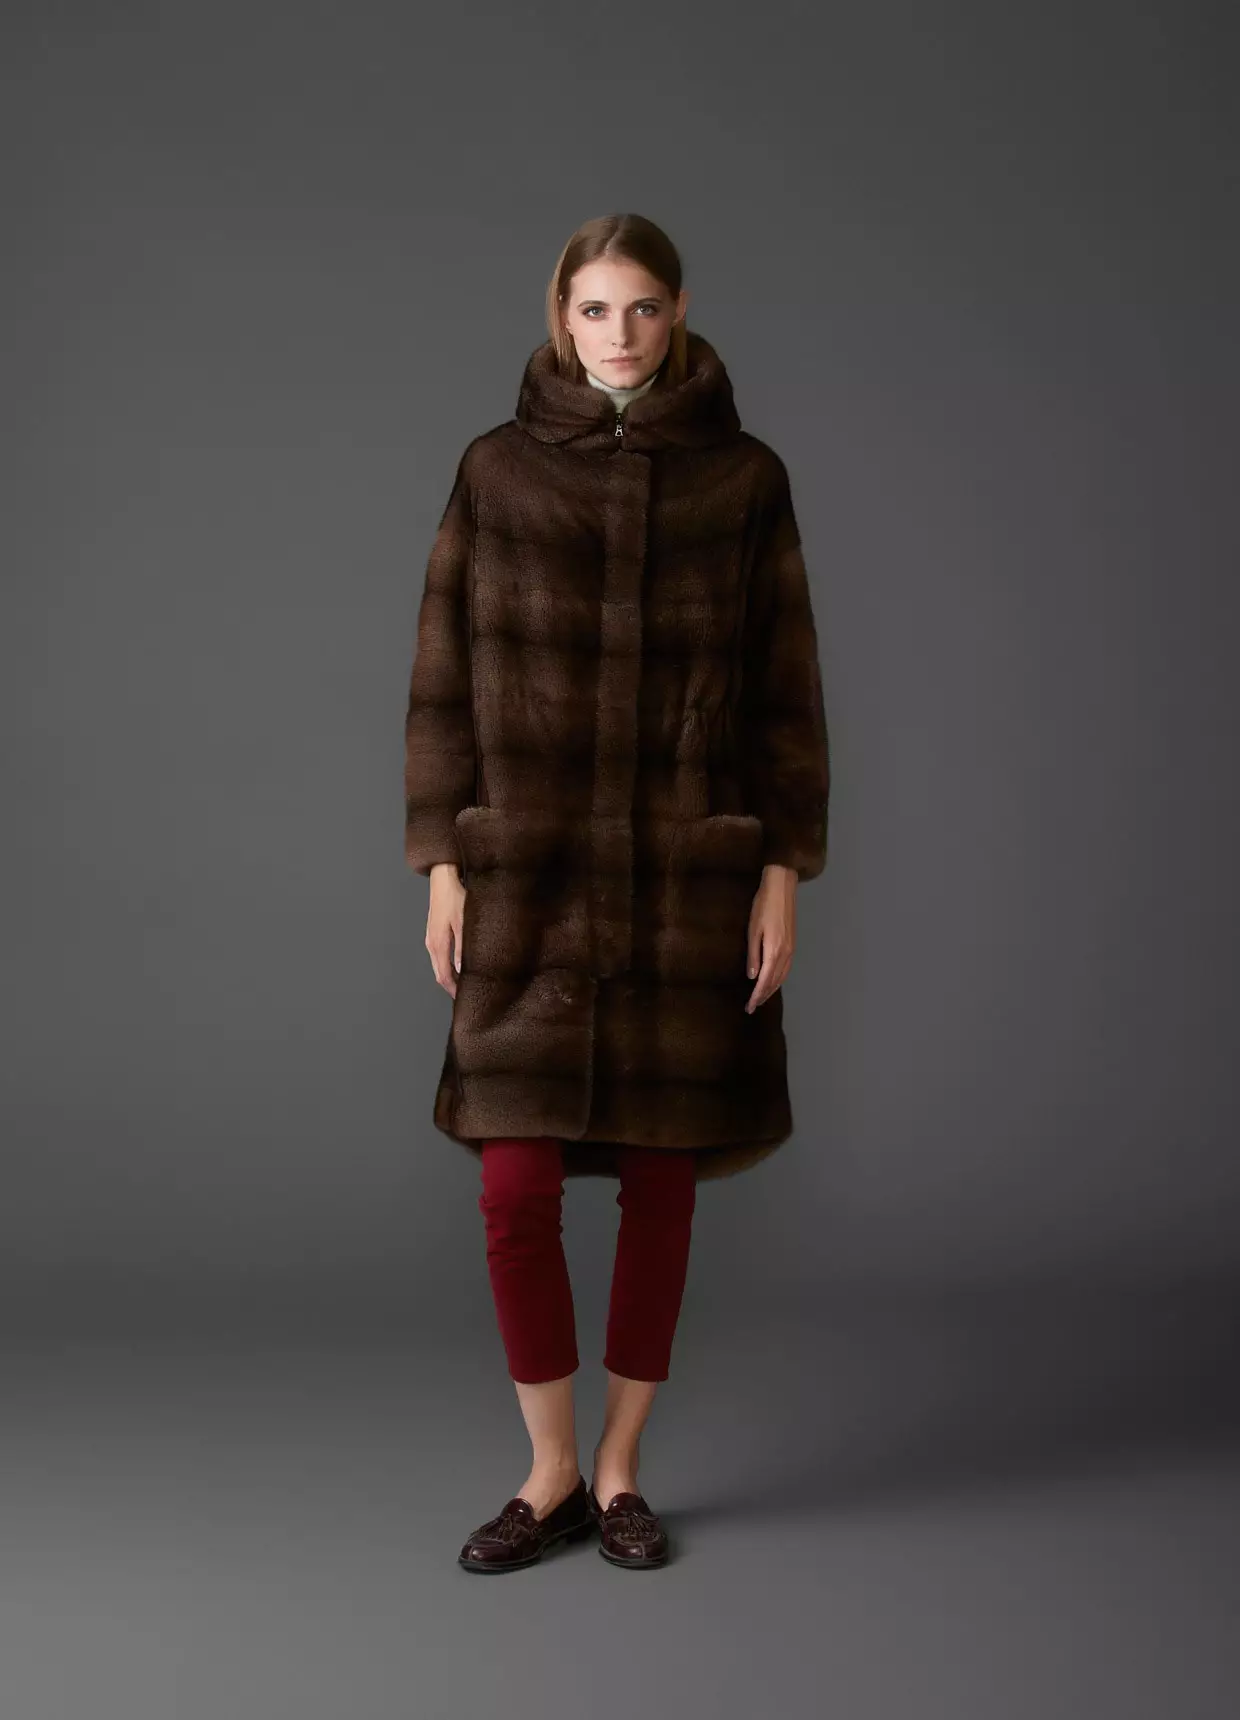 Fur coat mula sa mink pieces (70 mga larawan): Mga Review tungkol sa mink coat pieces habang nagkakahalaga ito 14423_28